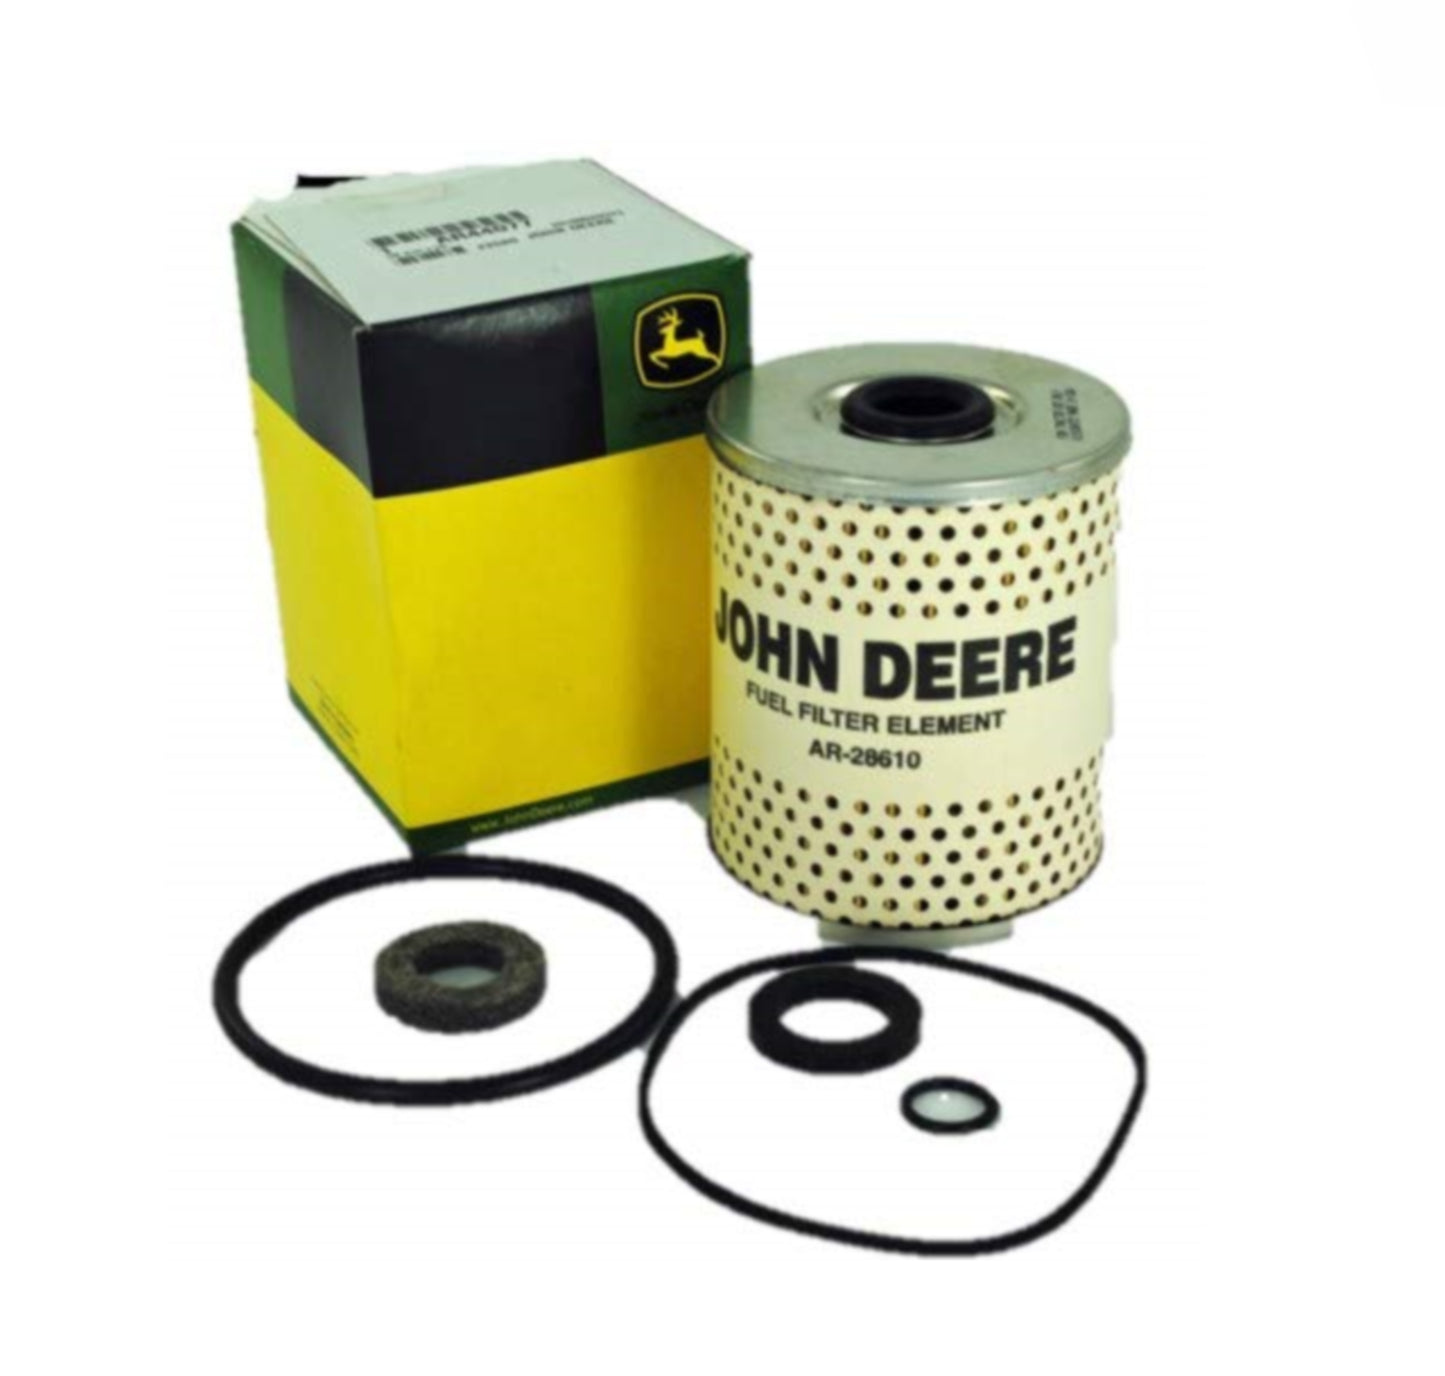 John Deere Original Equipment Filter Element - AR44077,1